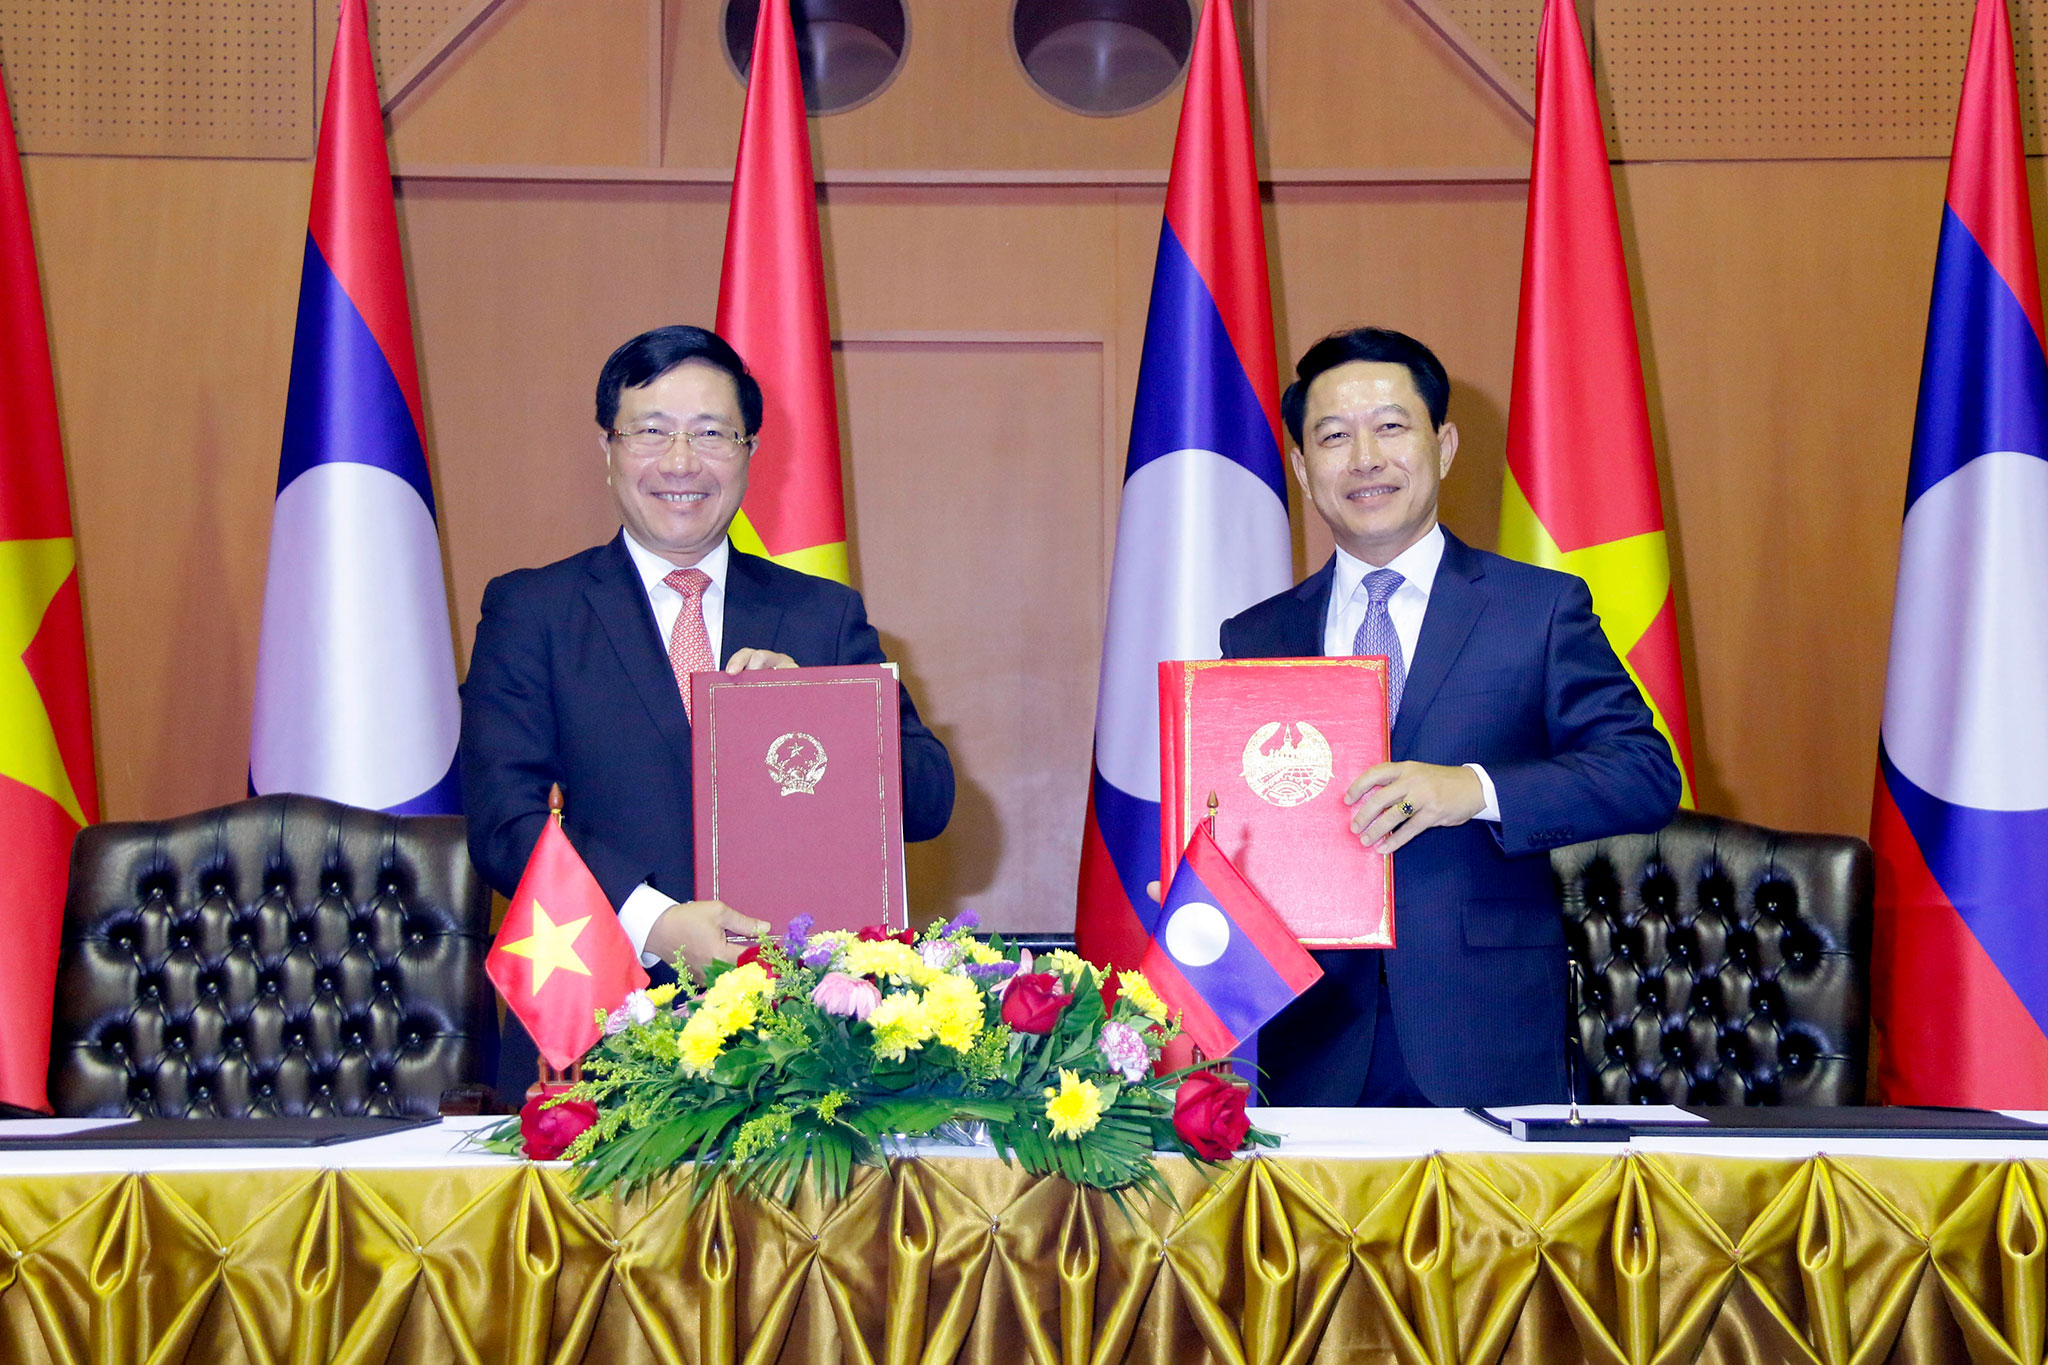 Phó Thủ tướng, Bộ trưởng Ngoại giao Phạm Bình Minh và Bộ trưởng Ngoại giao Lào Saleumsay Kommasith đã ký Thỏa thuận hợp tác giữa Bộ Ngoại giao Việt Nam và Bộ Ngoại giao Lào.